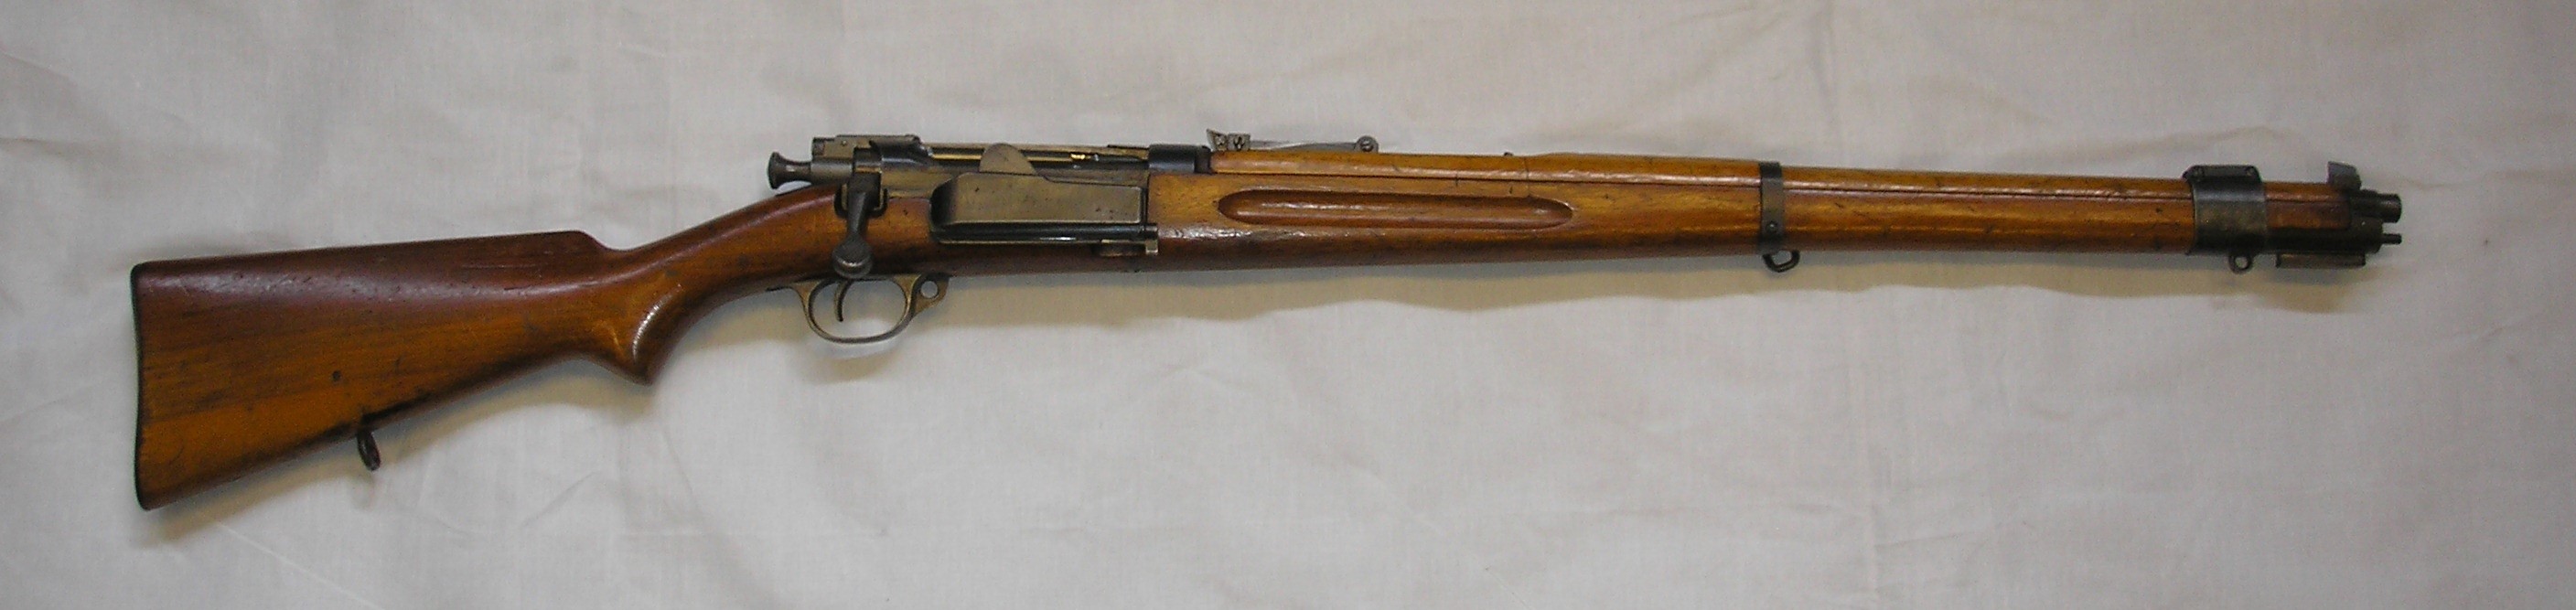 ./guns/rifle/bilder/Rifle-Kongsberg-Krag-M1912-3891-8.JPG